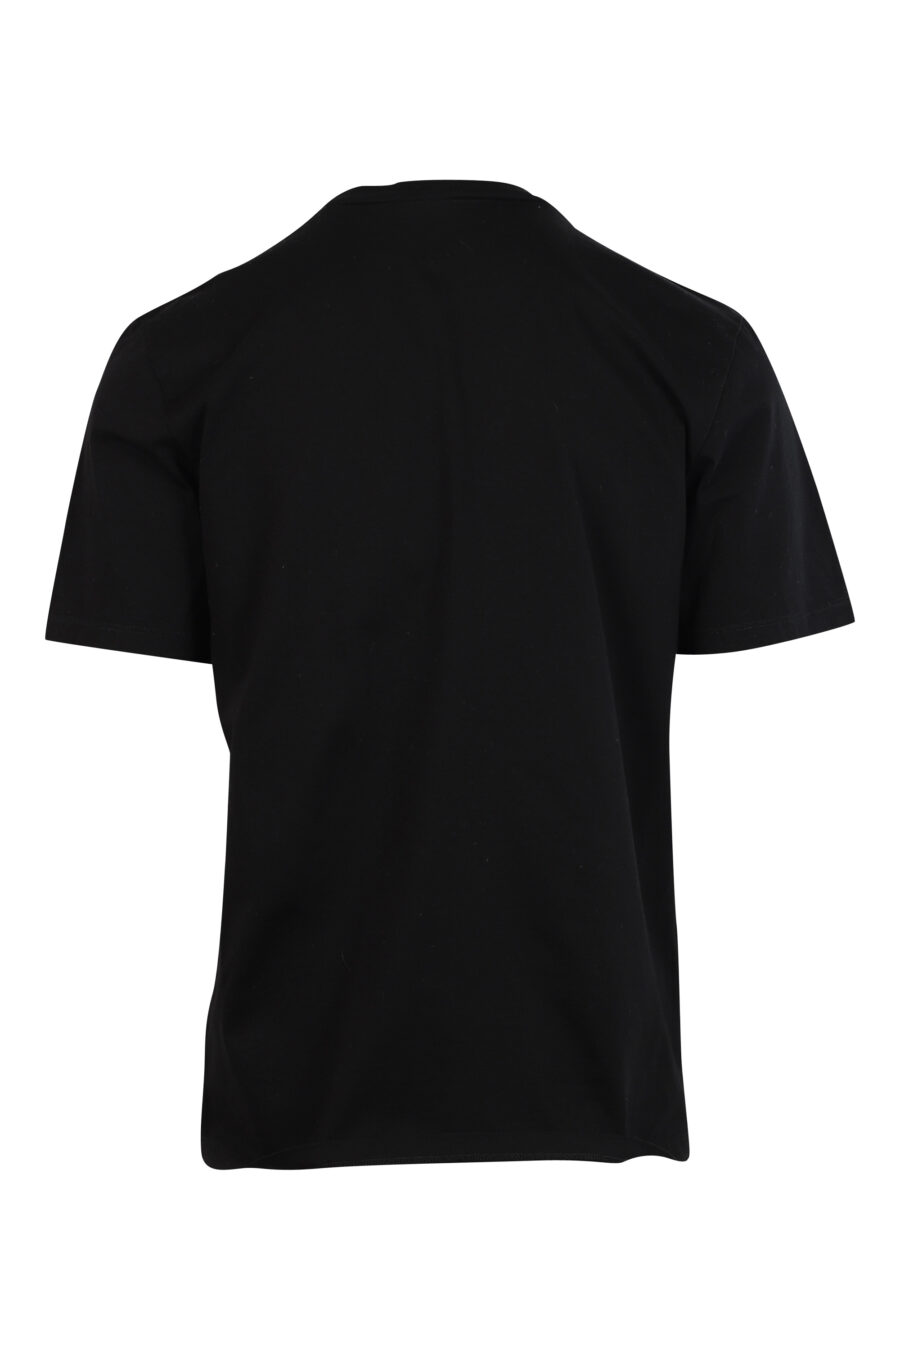 Schwarzes T-Shirt mit schwarzem geprägtem Maxilogo - 8052134990285 2